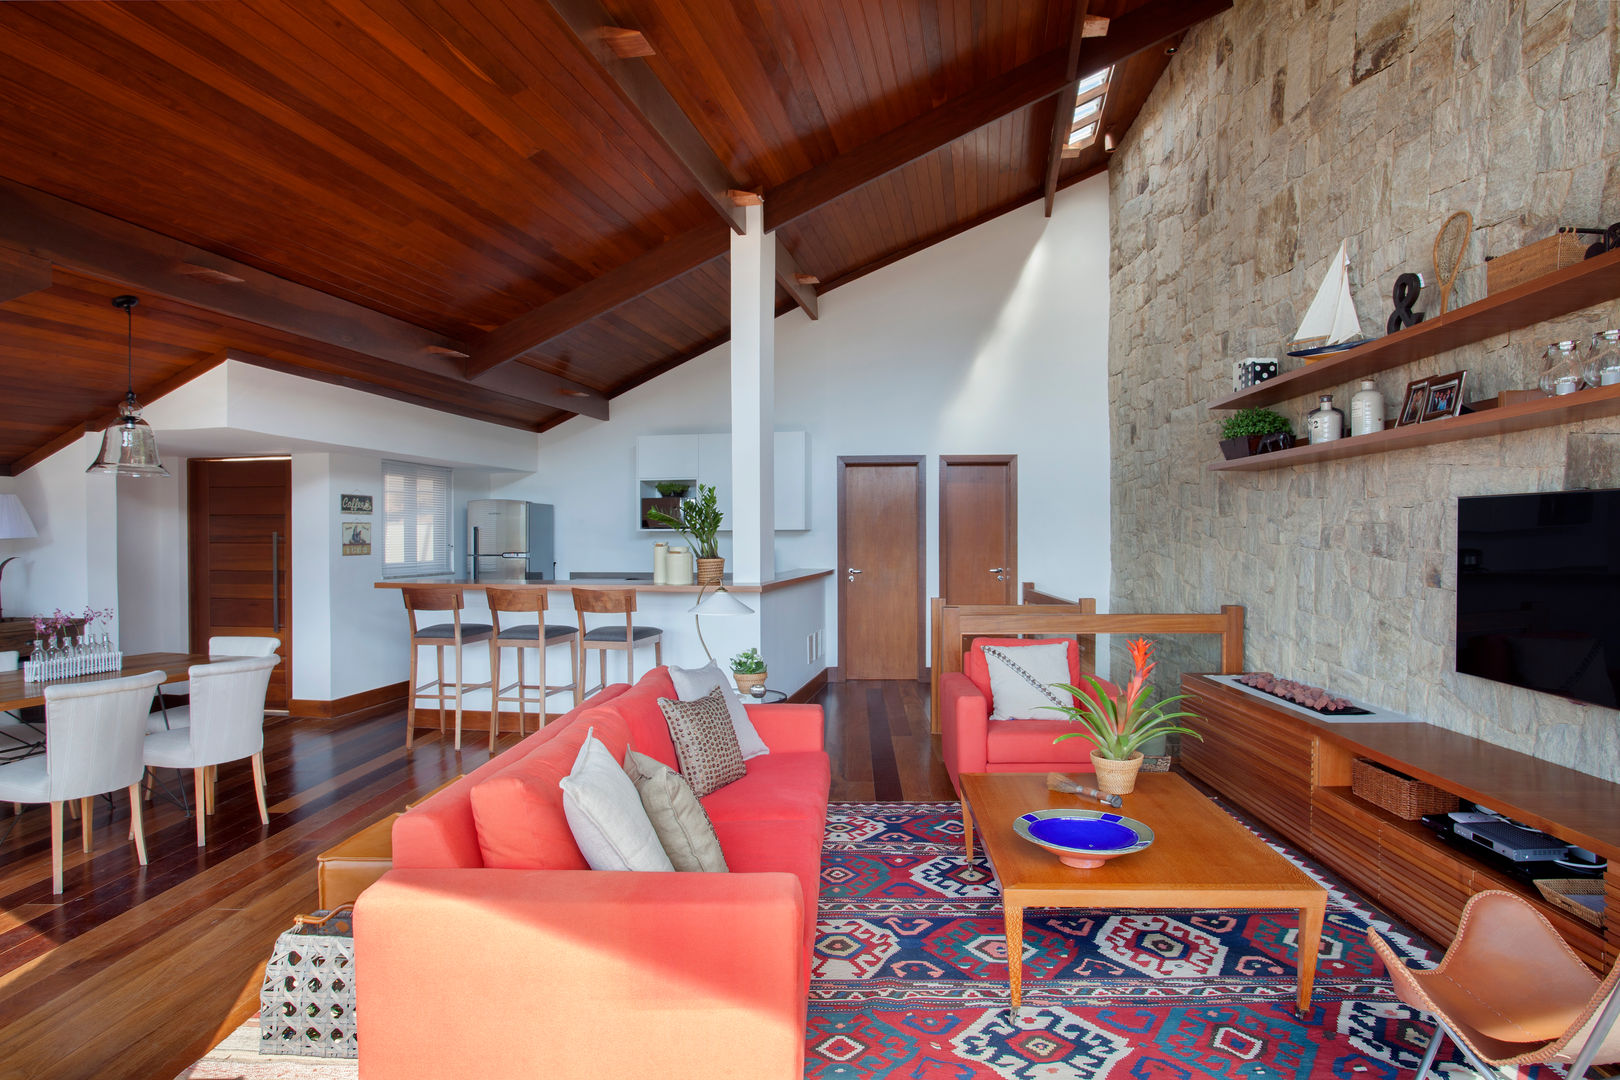 Casa Itaipava, sadala gomide arquitetura sadala gomide arquitetura Living room